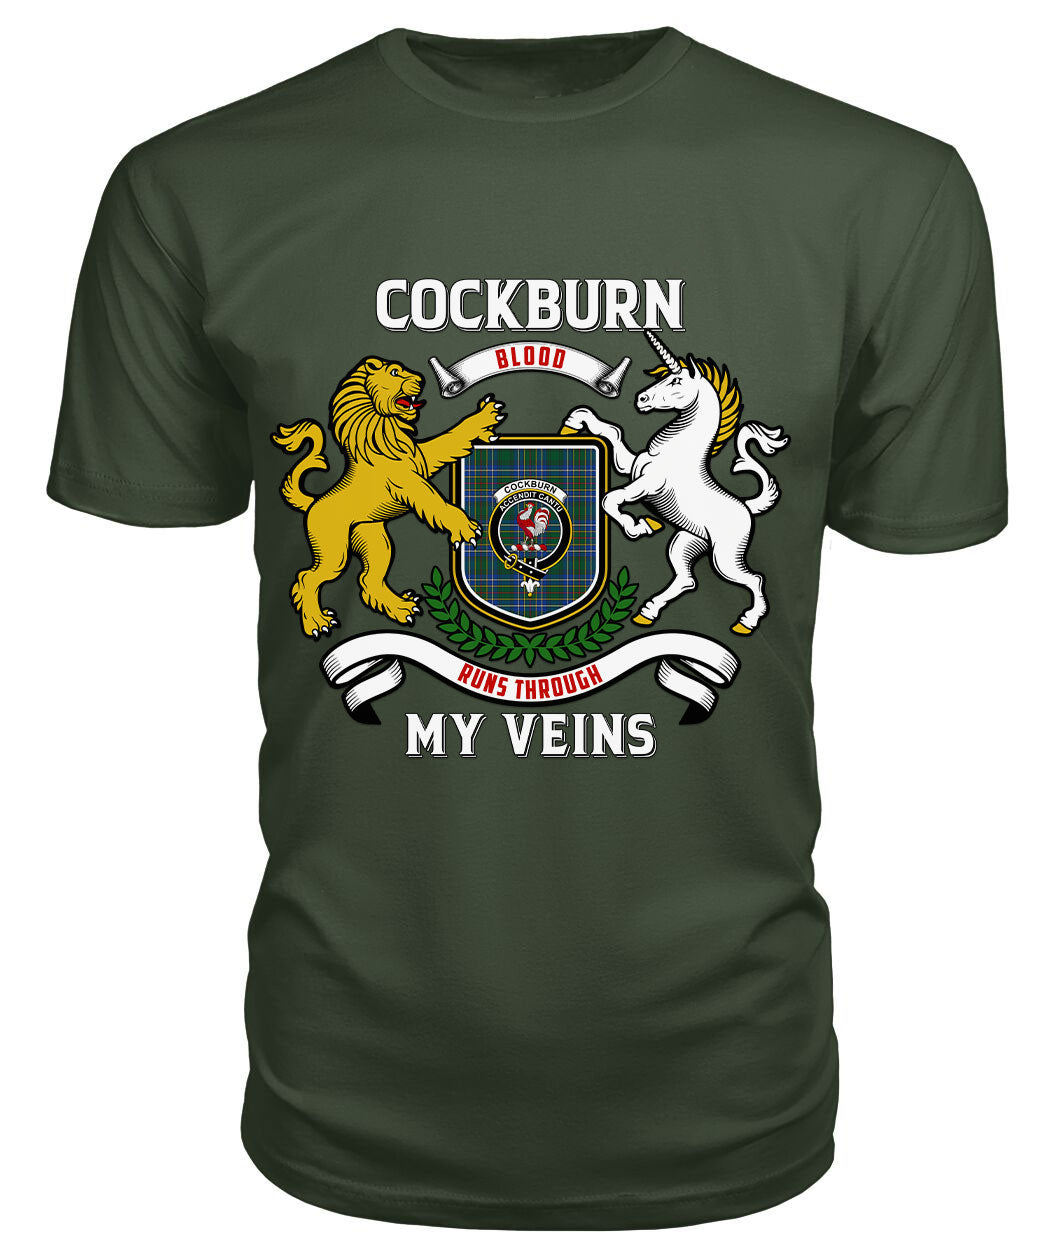 Cockburn Ancient Tartan Crest 2D T-shirt - Blood Runs Through My Veins Style